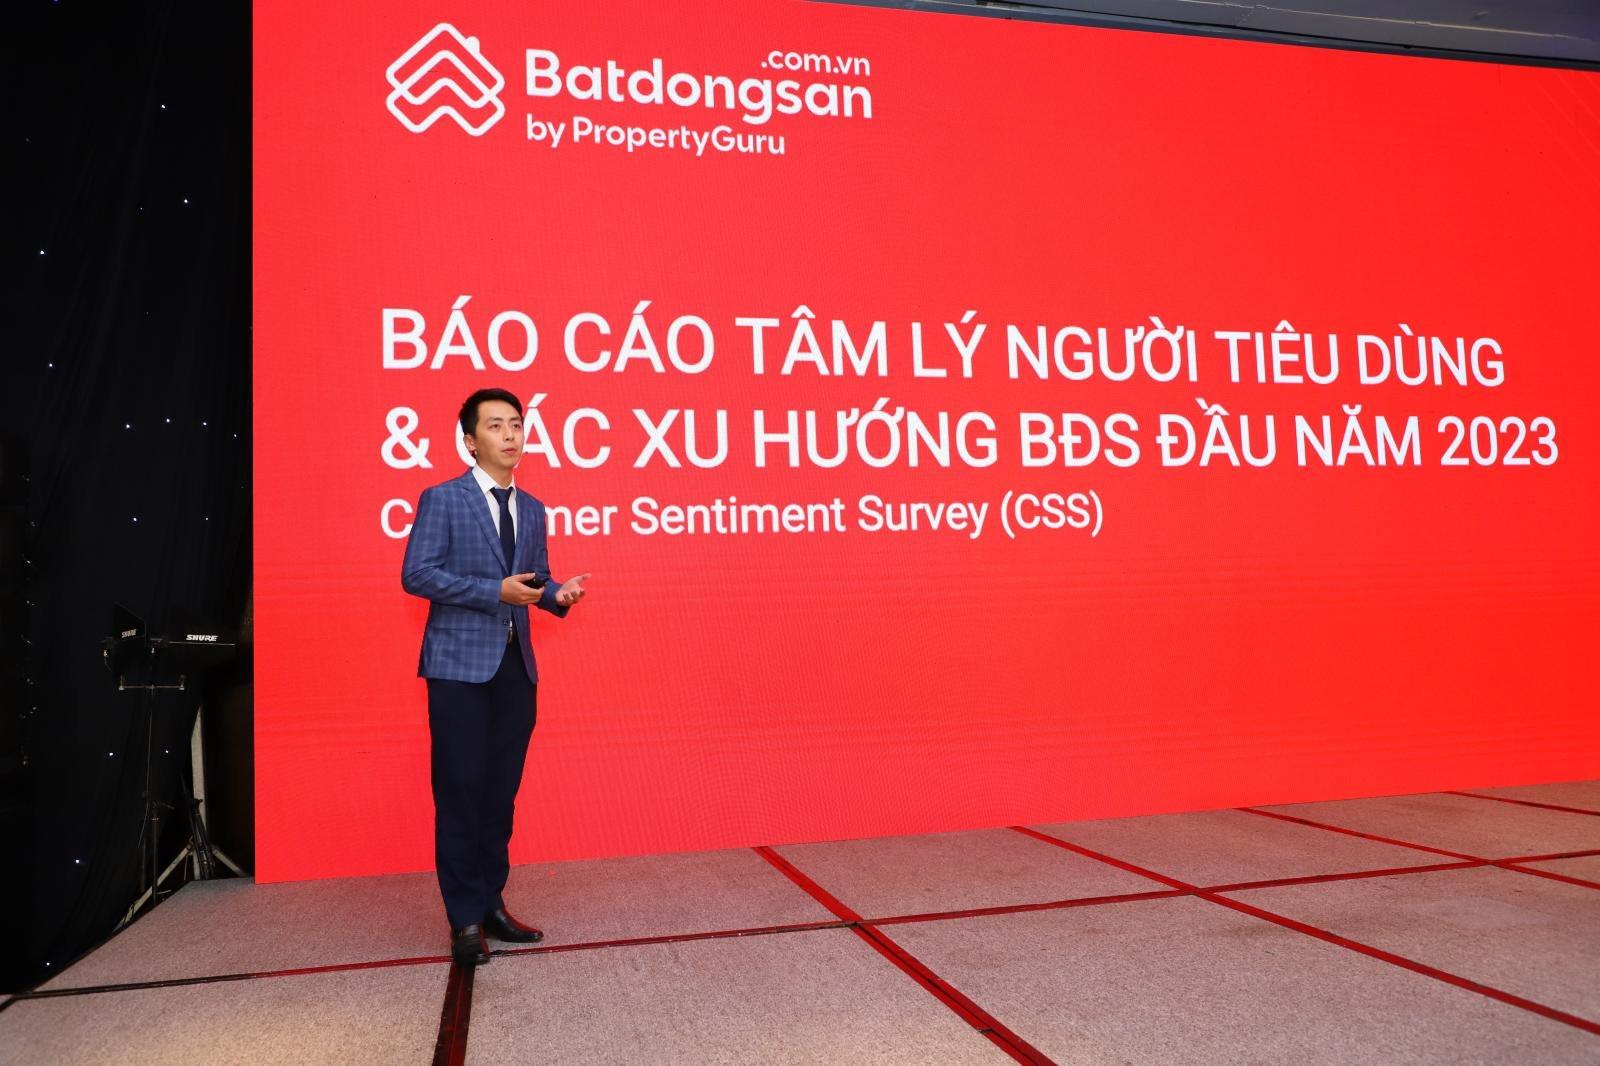 "Kỳ lân" sở hữu Batdongsan.com gặp khó tại Việt Nam, doanh thu quý 1 giảm 34% - Ảnh 1.